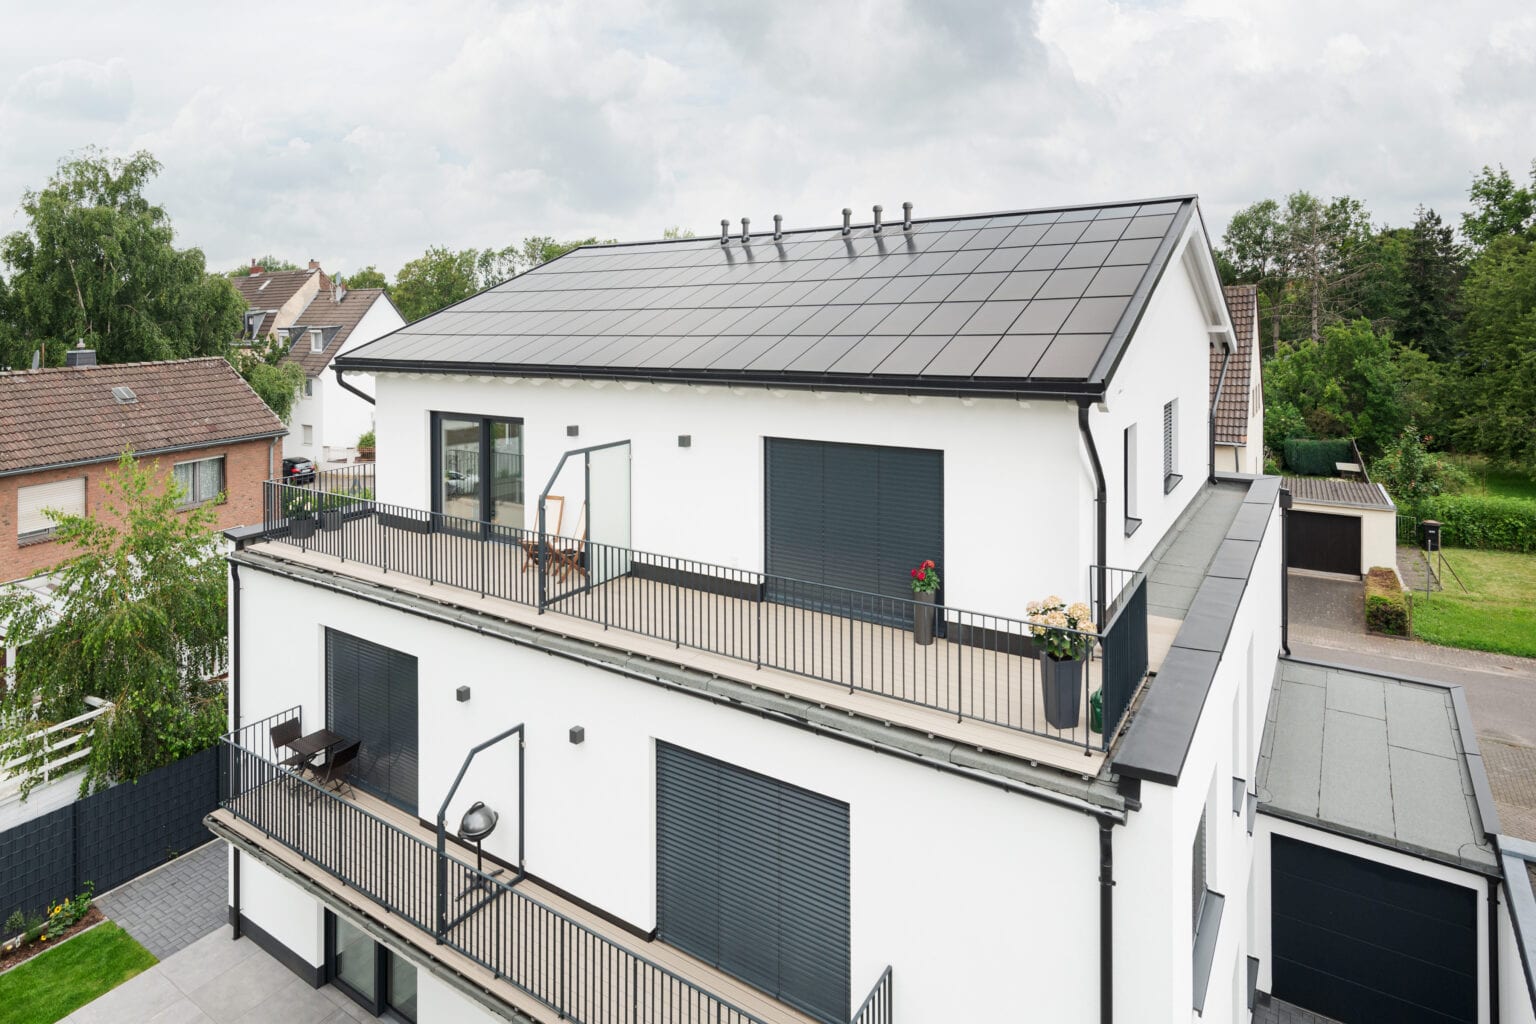 Ennogie-Solardach auf Neubau in Köln: Fokus auf homogener Dachfläche inklusive Lüftungen, Balkone und Garage zu erkennen